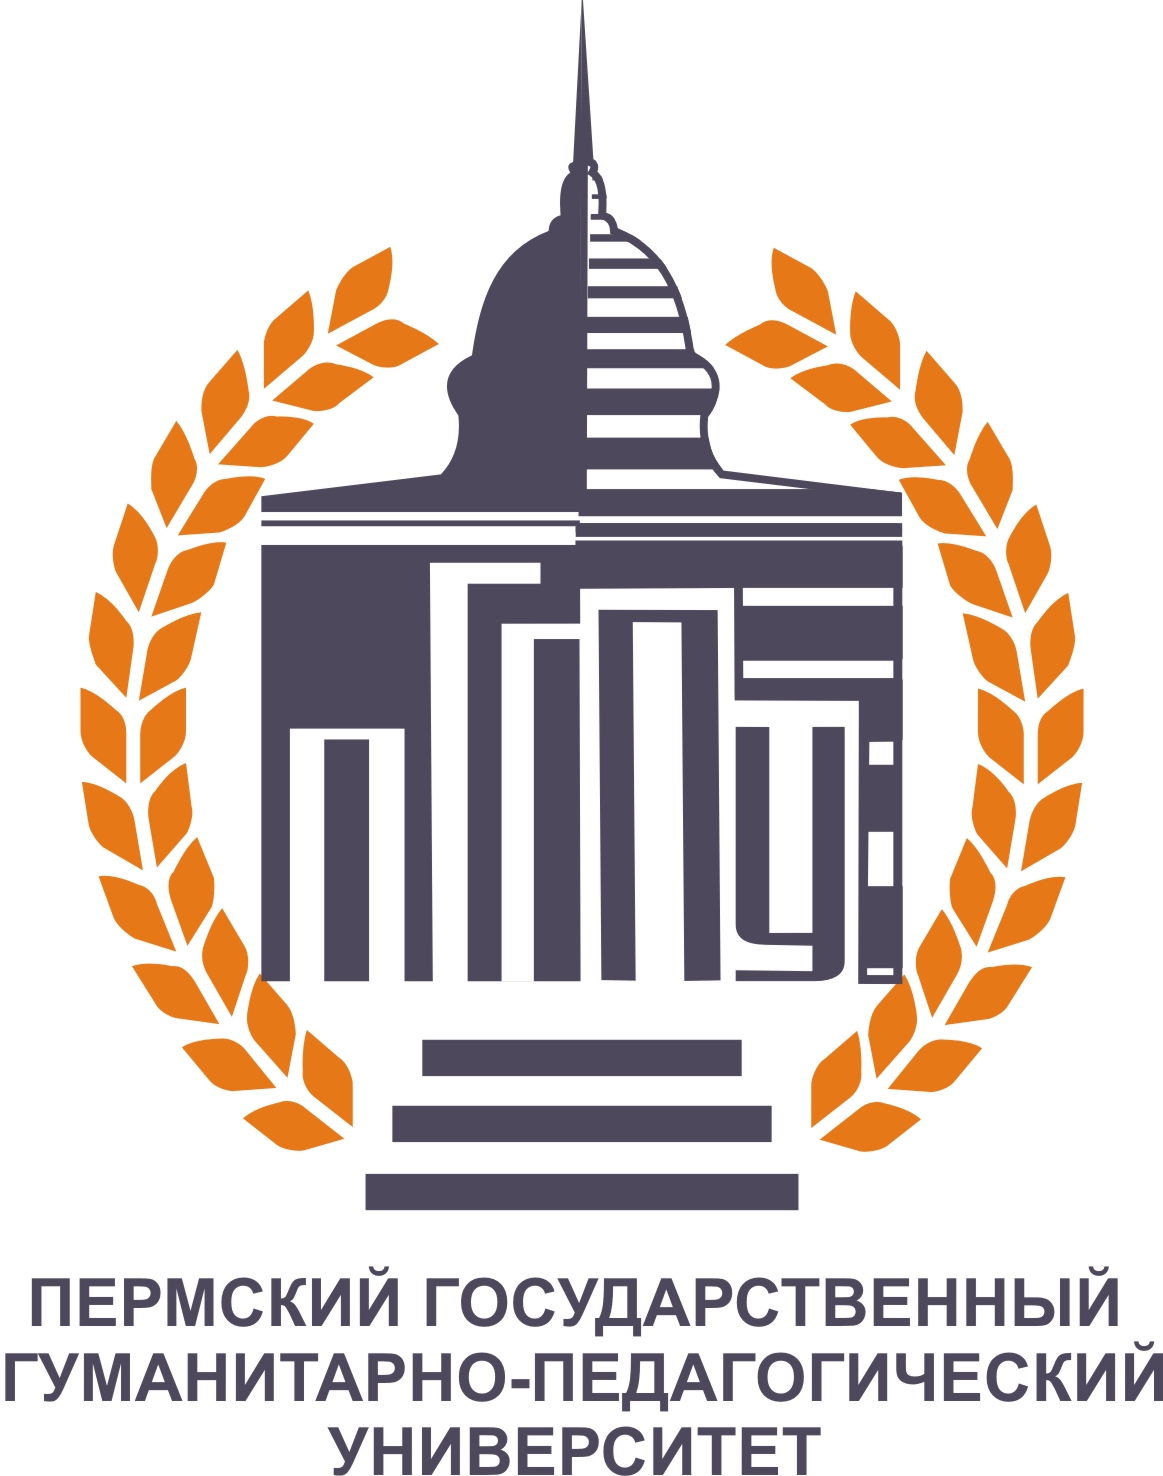 Пермский государственный гуманитарно-педагогический университет